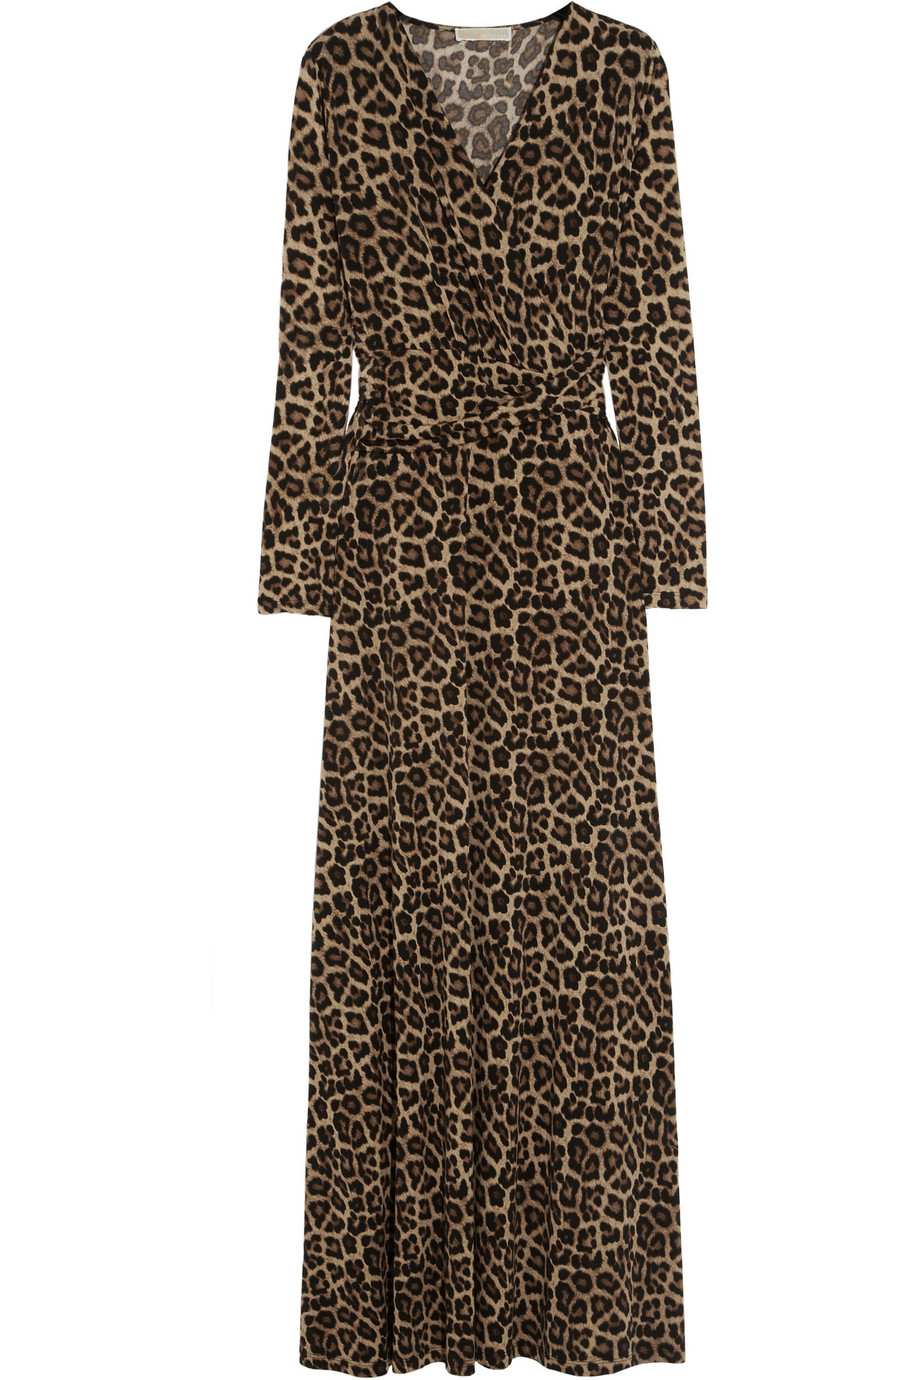 Lyst - Michael Michael Kors Leopardprint Stretchjersey Maxi Dress